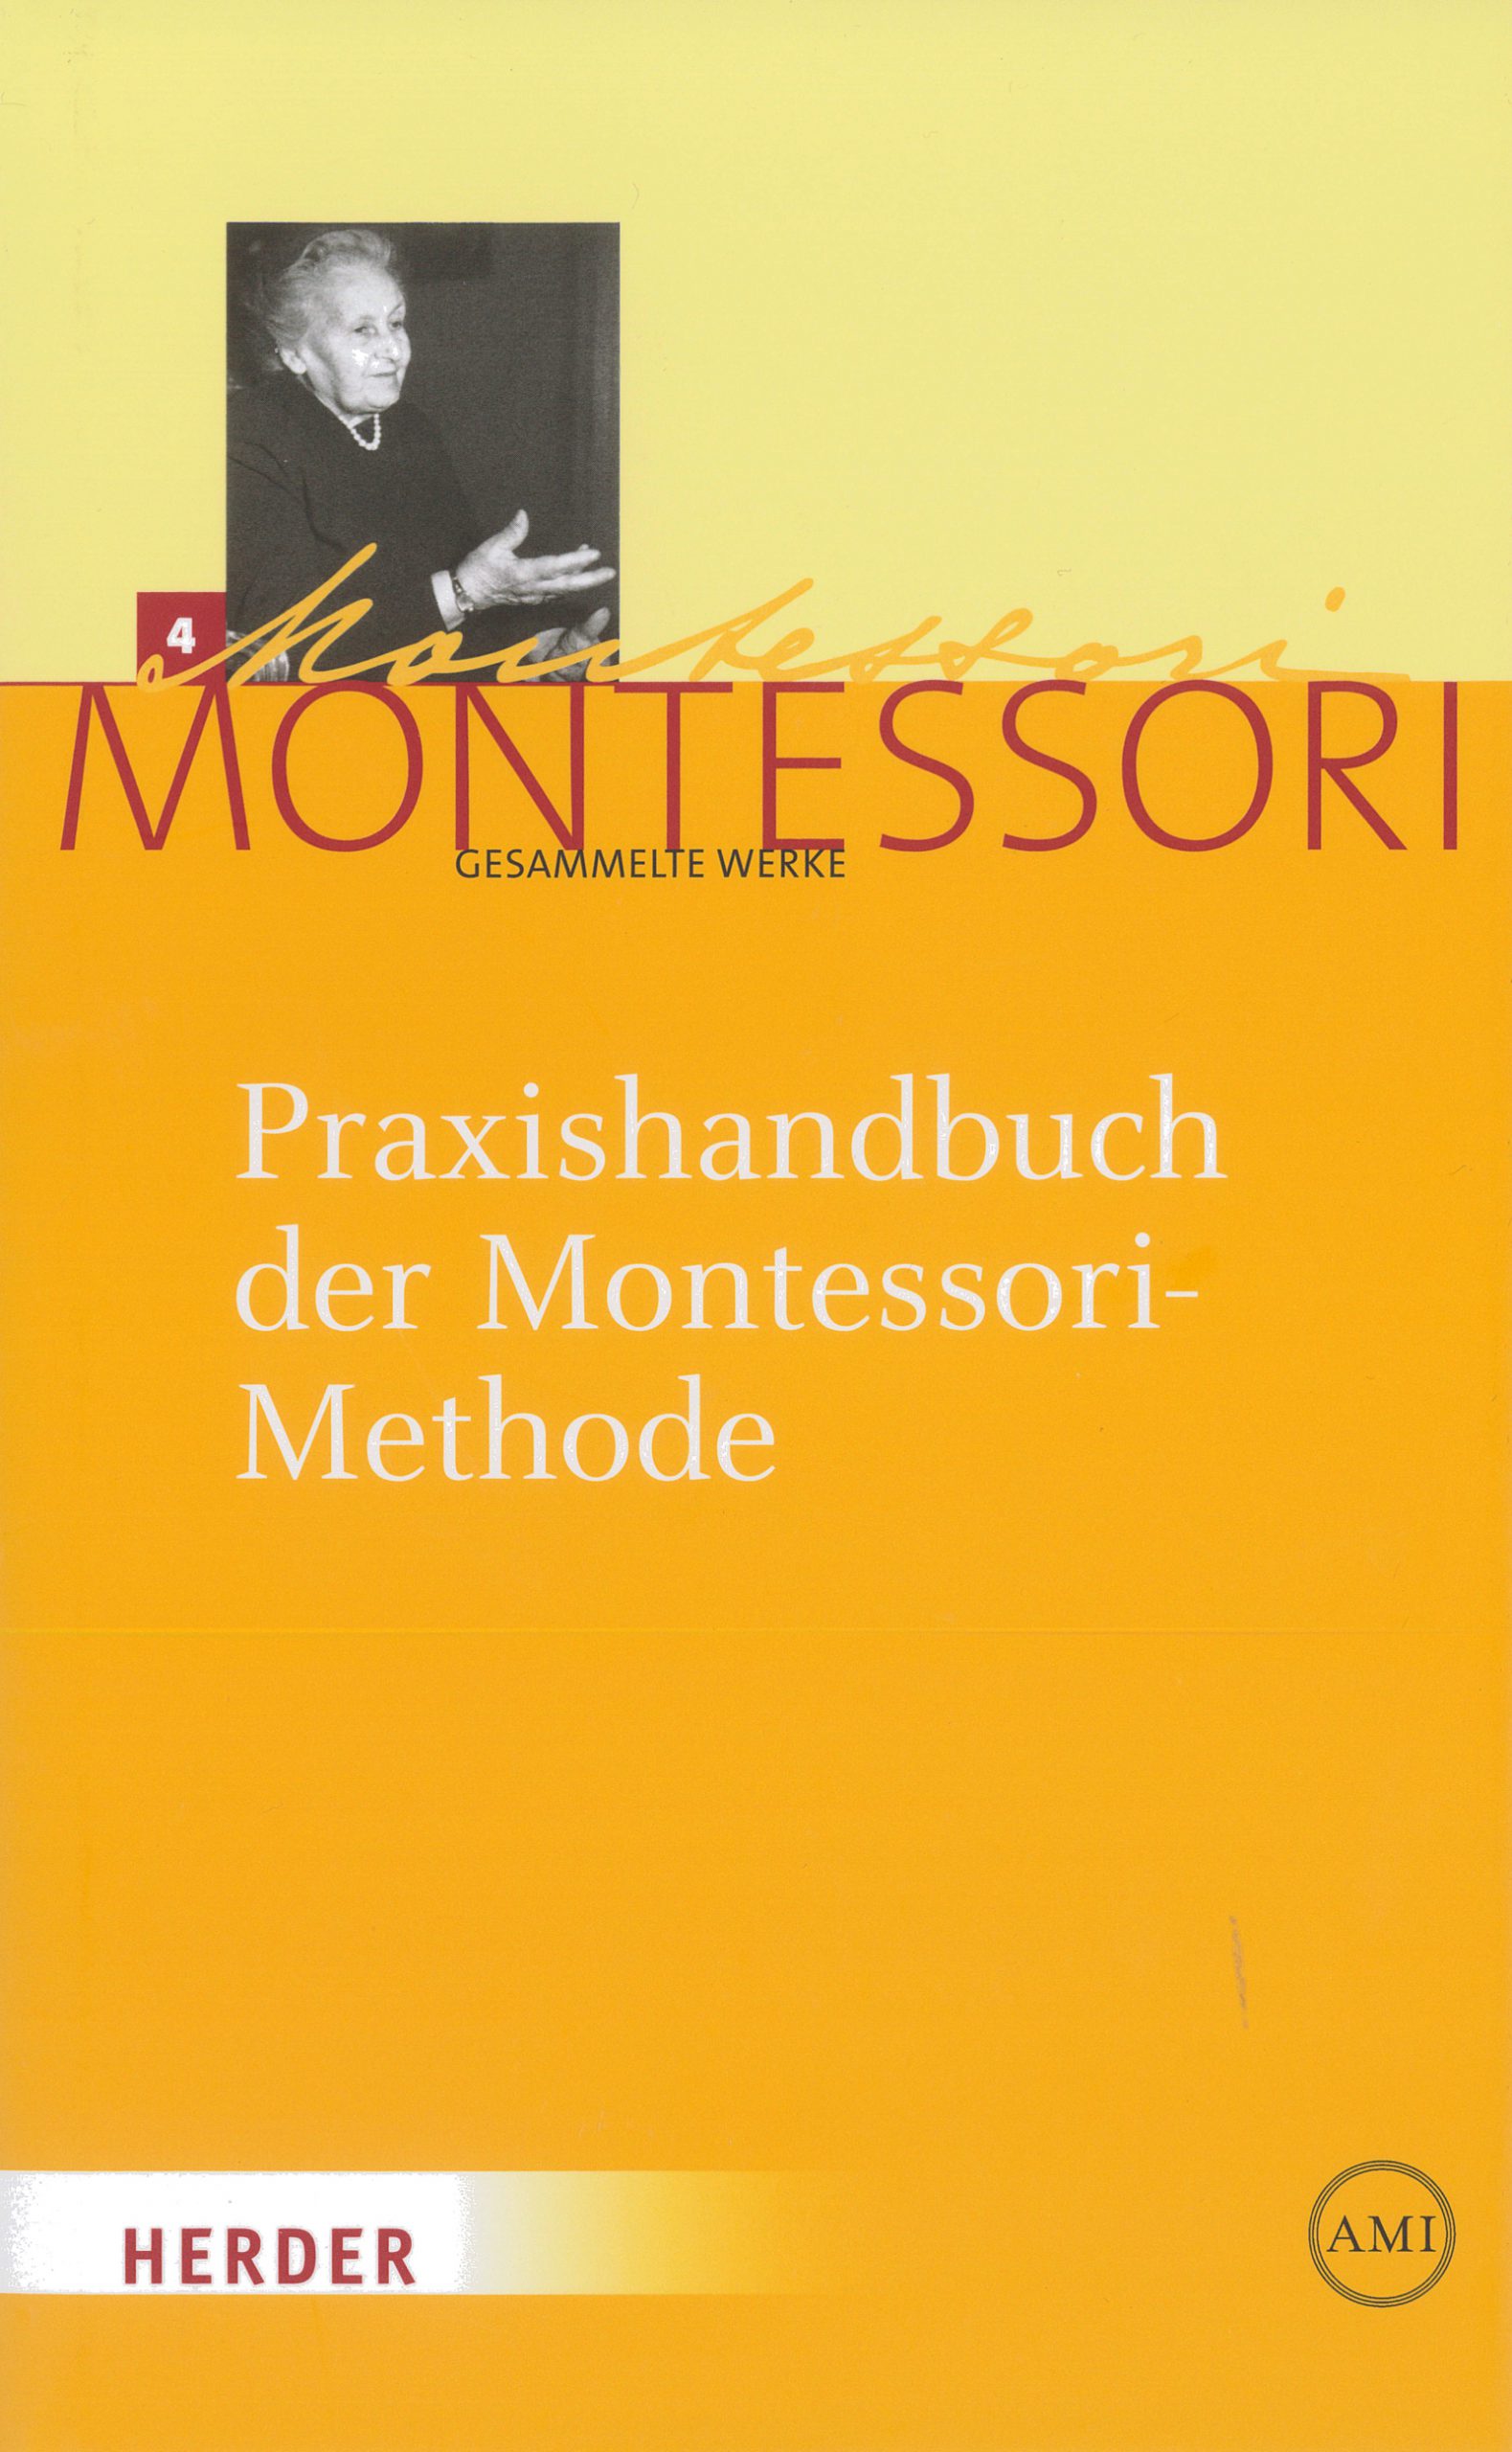 Praxishandbuch der Montessori Methode scaled 1